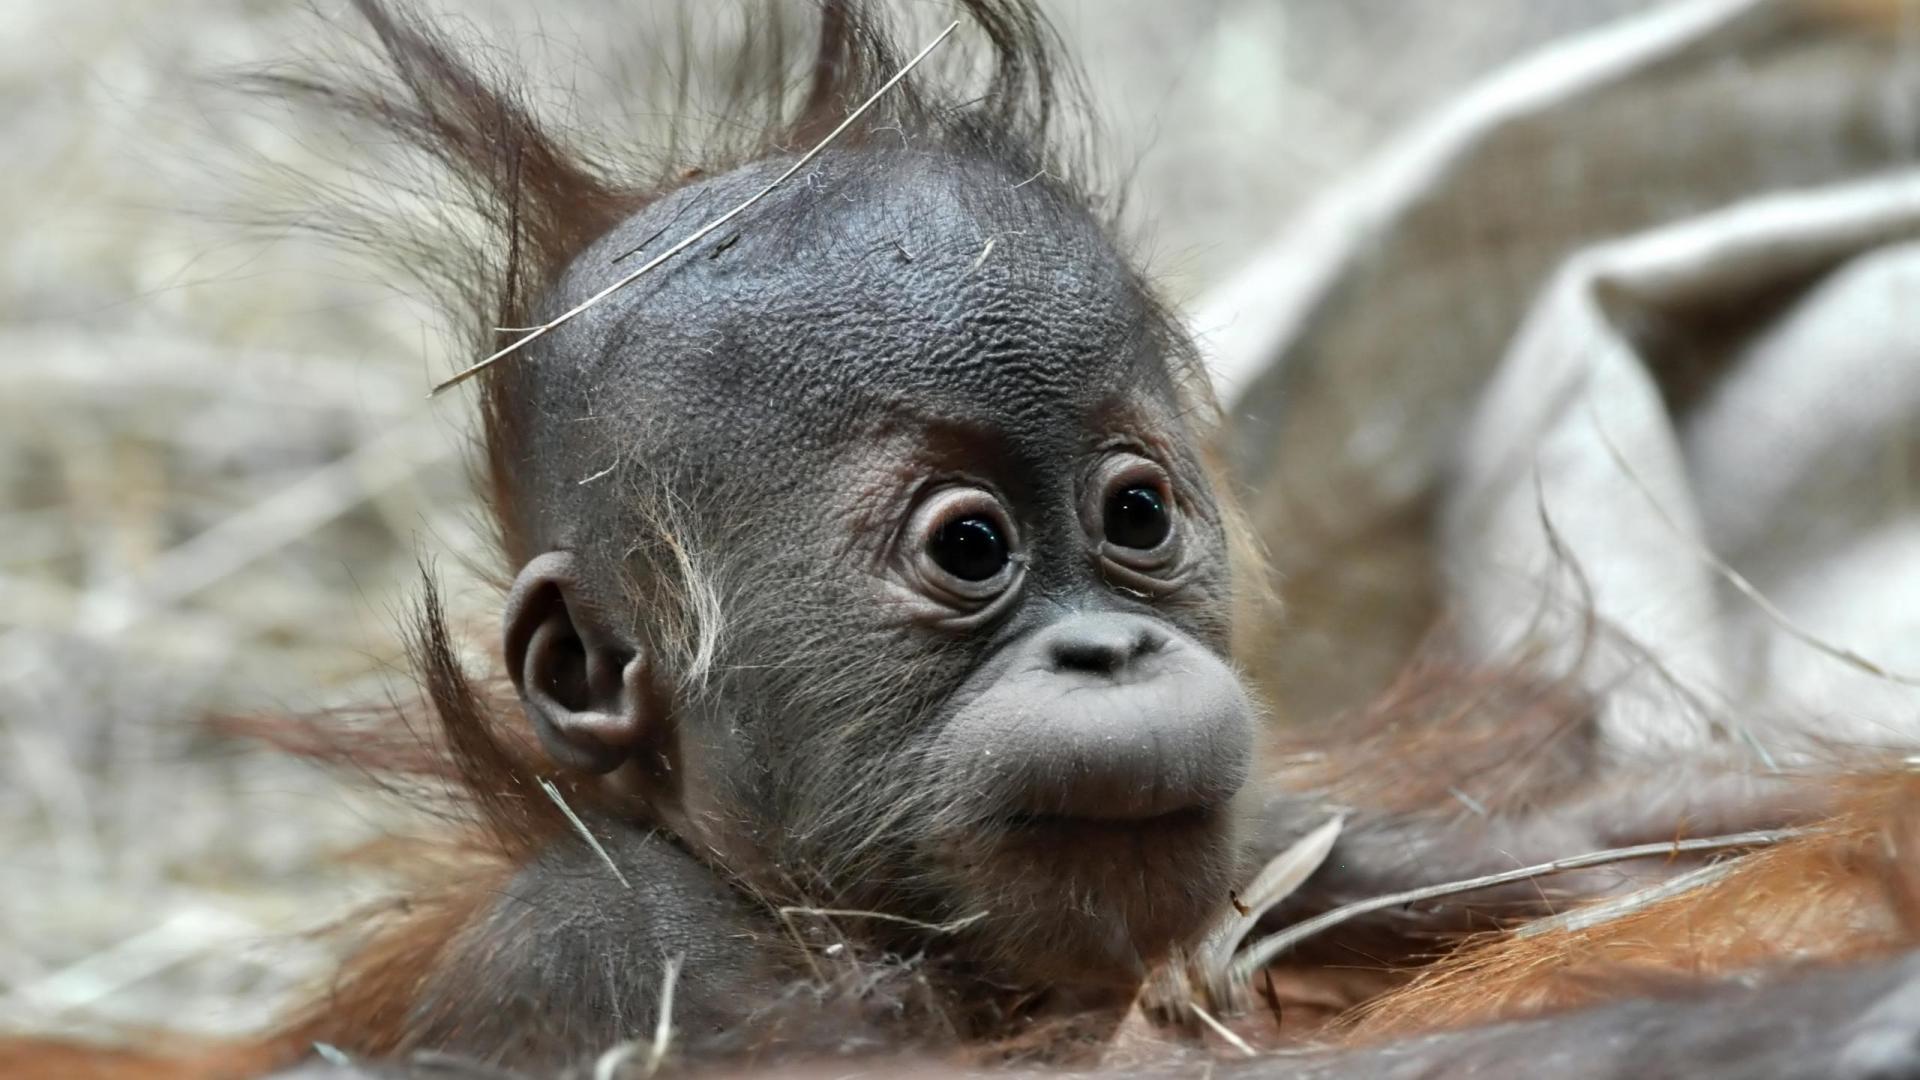 Baby Orangutan Animals picture Wallpaper. Widescreen Wallpaper